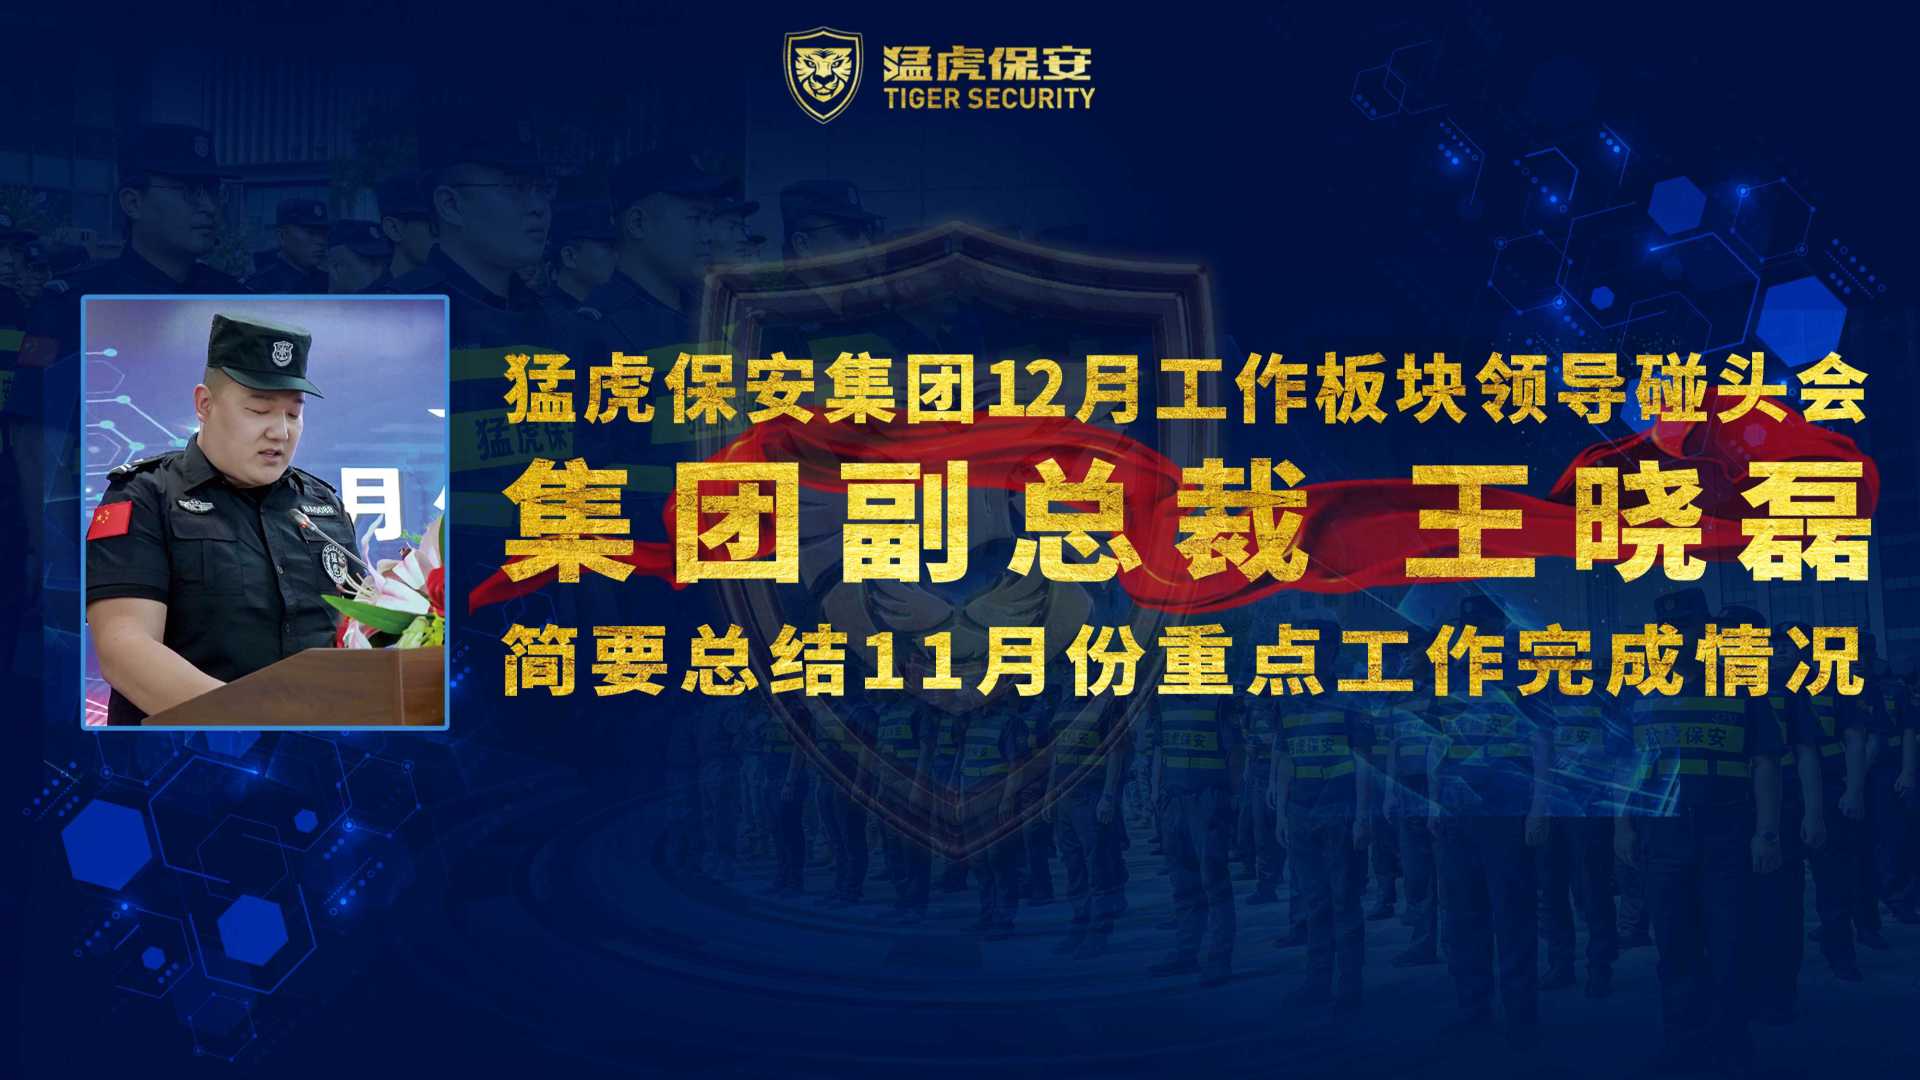 猛虎保安集团副总裁王晓磊在12月工作板块领导碰头会上总结11月份重点工作完成情况